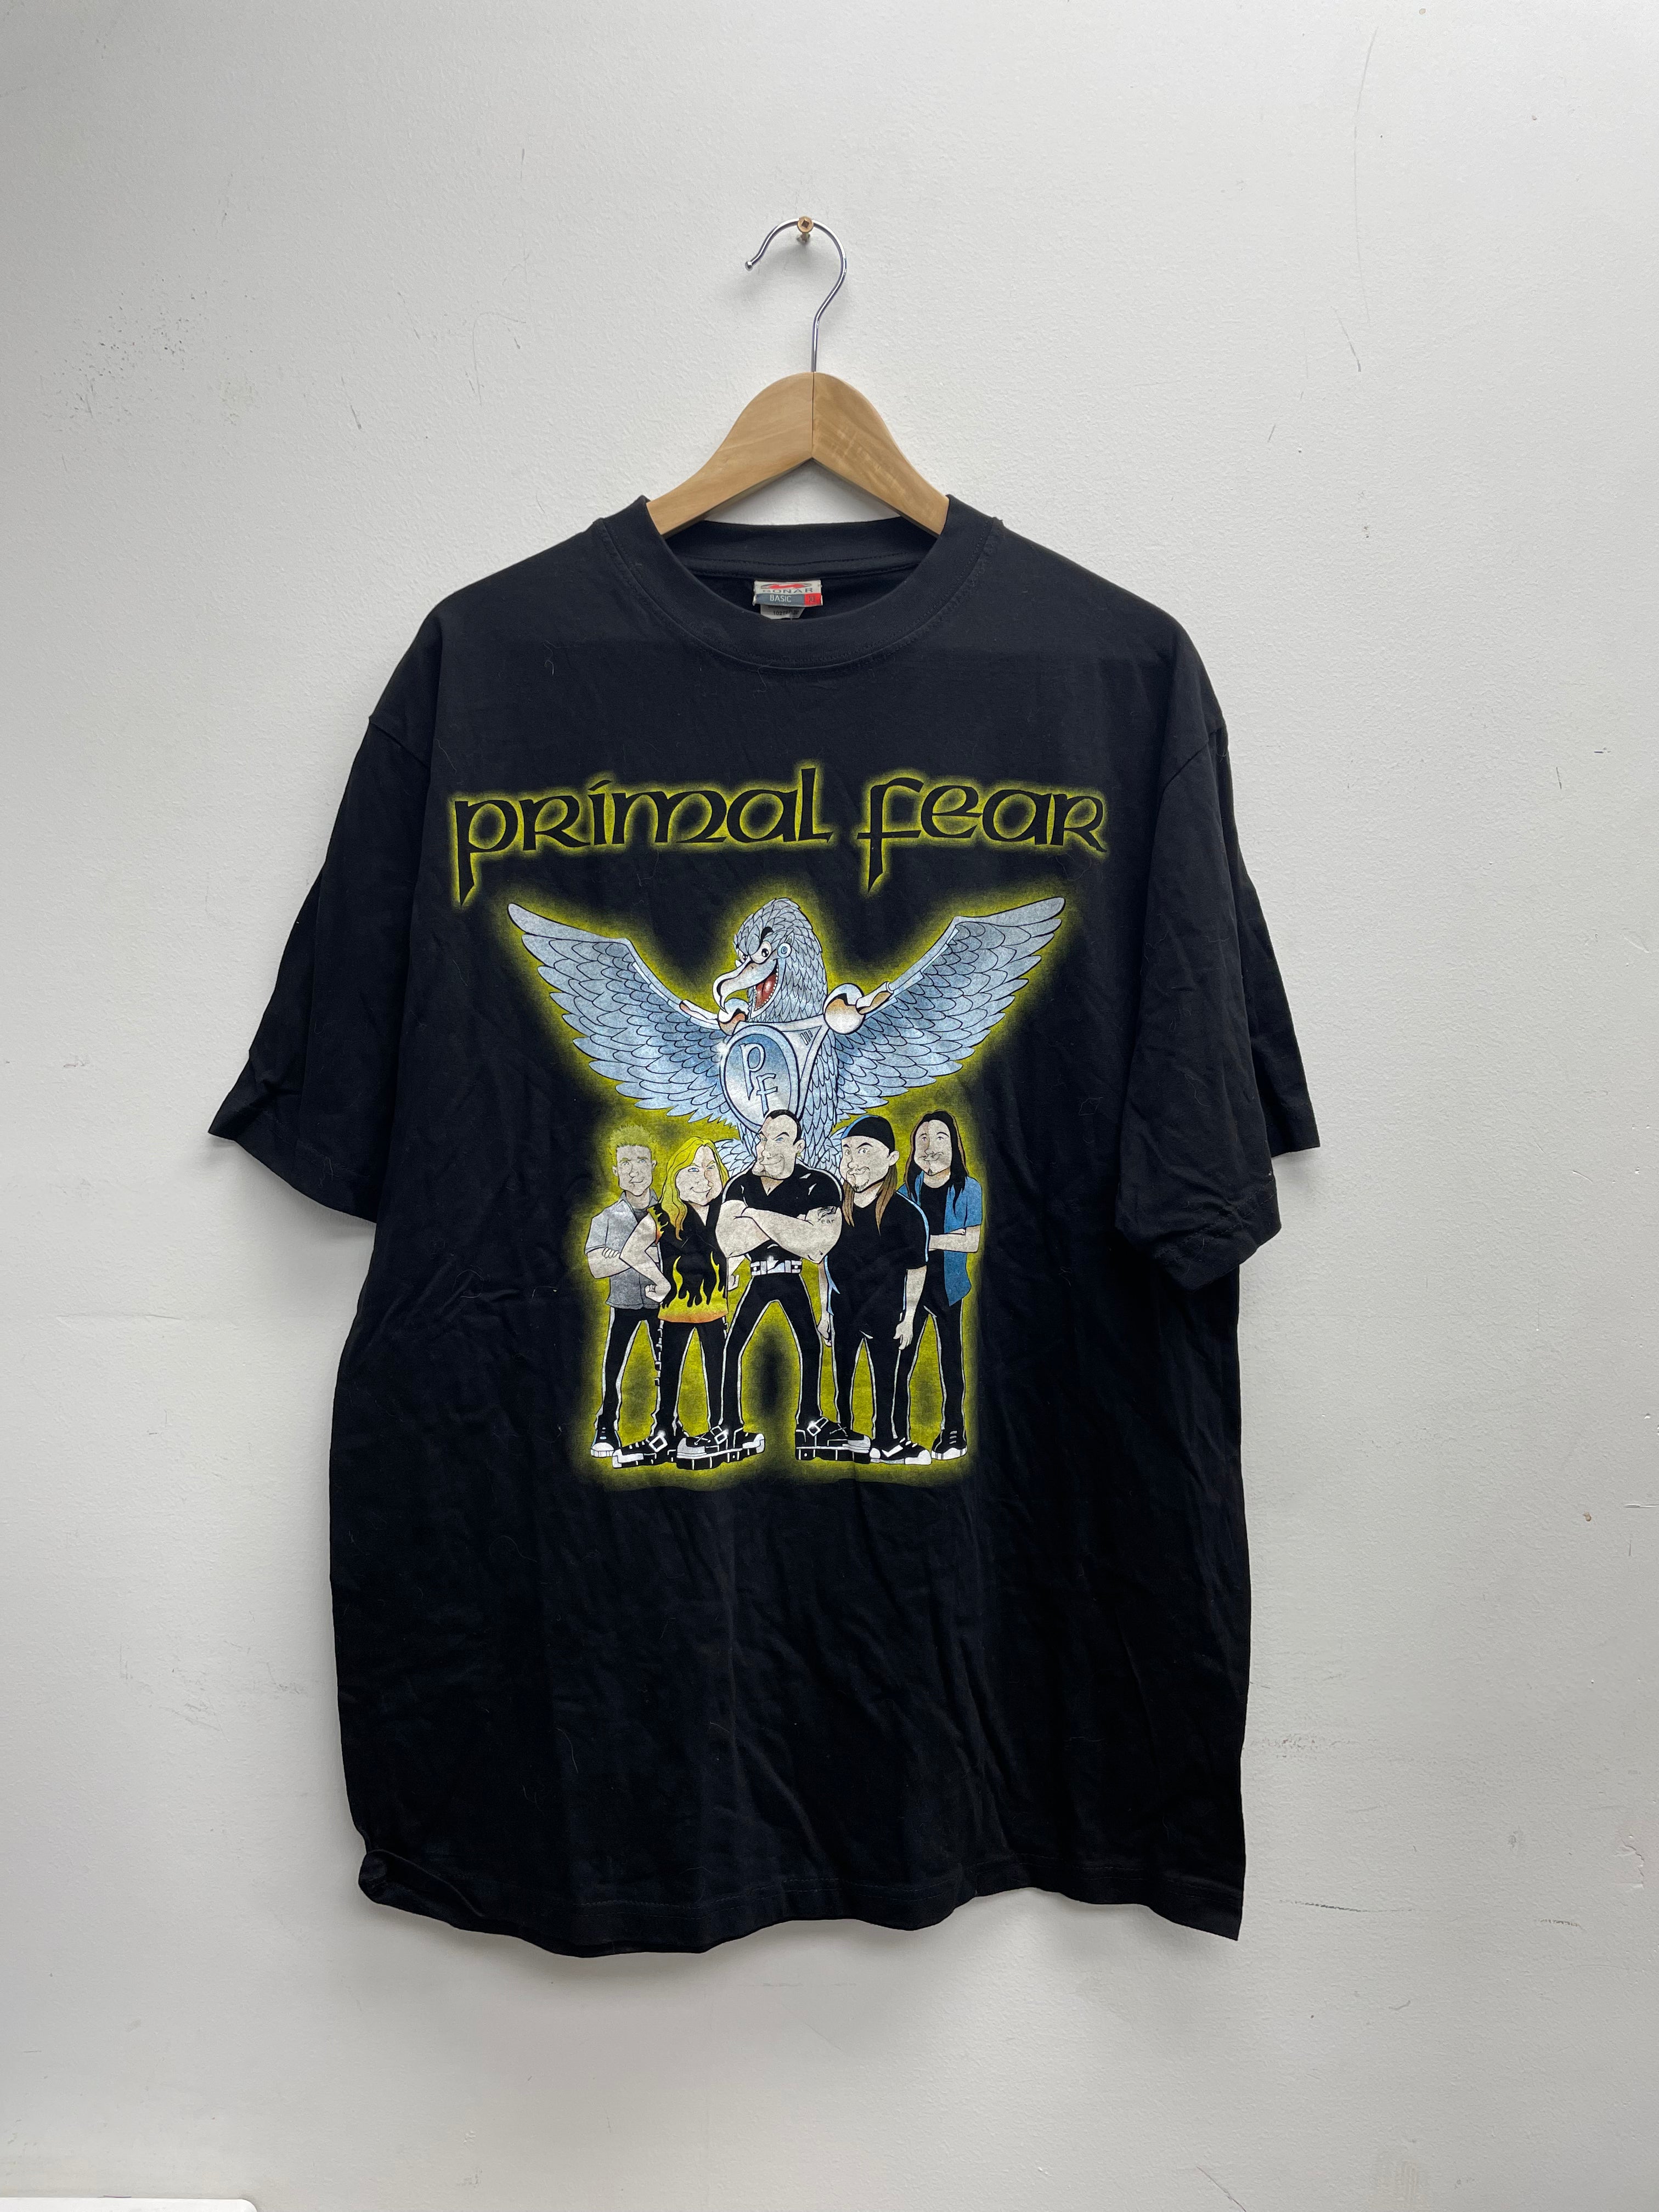 2003 T-shirt du groupe Primal Fear